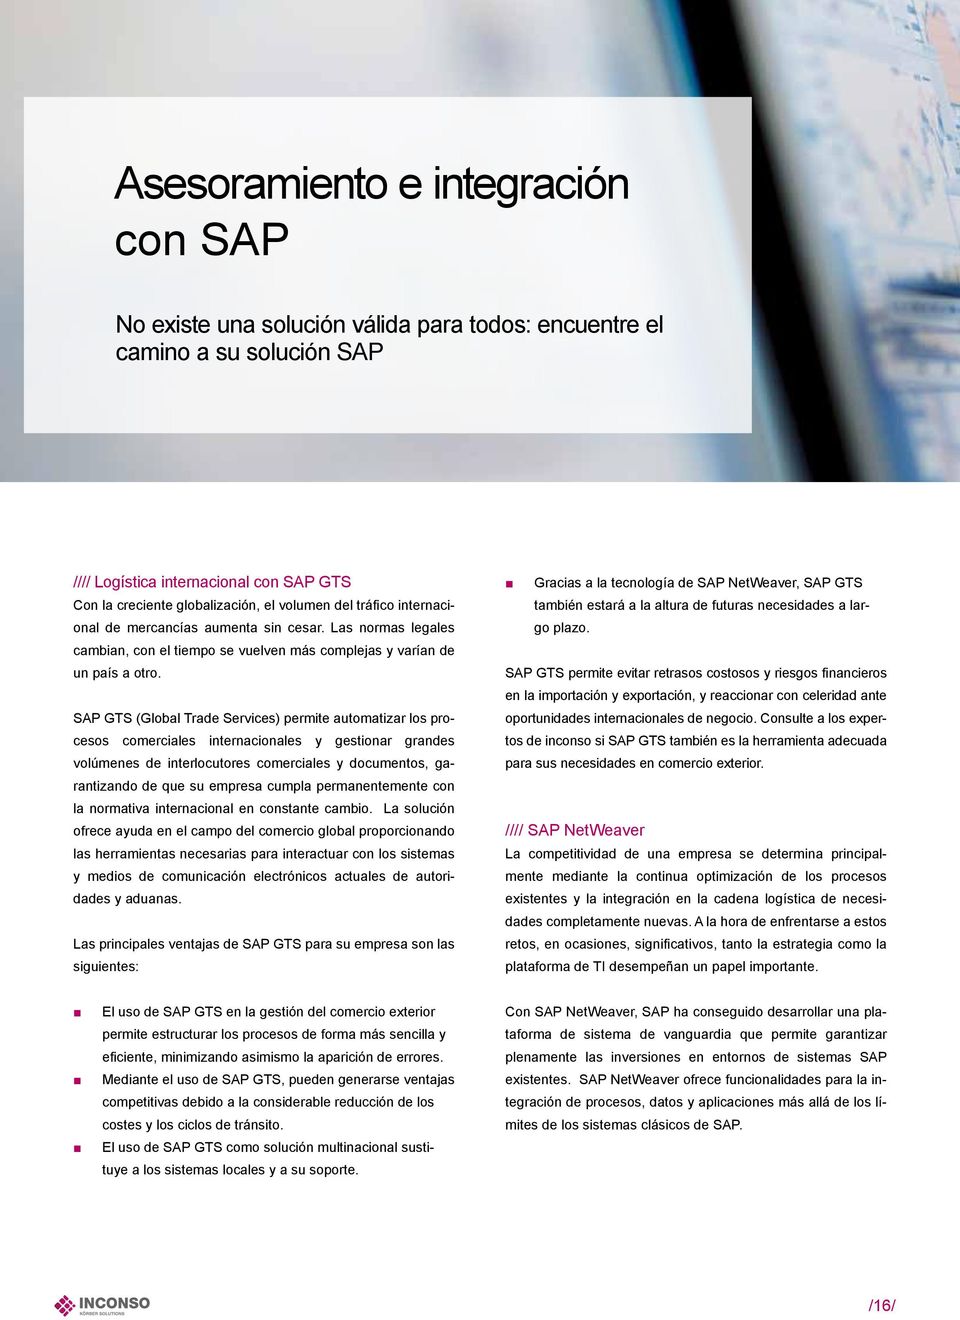 SAP GTS (Global Trade Services) permite automatizar los procesos comerciales internacionales y gestionar grandes volúmenes de interlocutores comerciales y documentos, garantizando de que su empresa